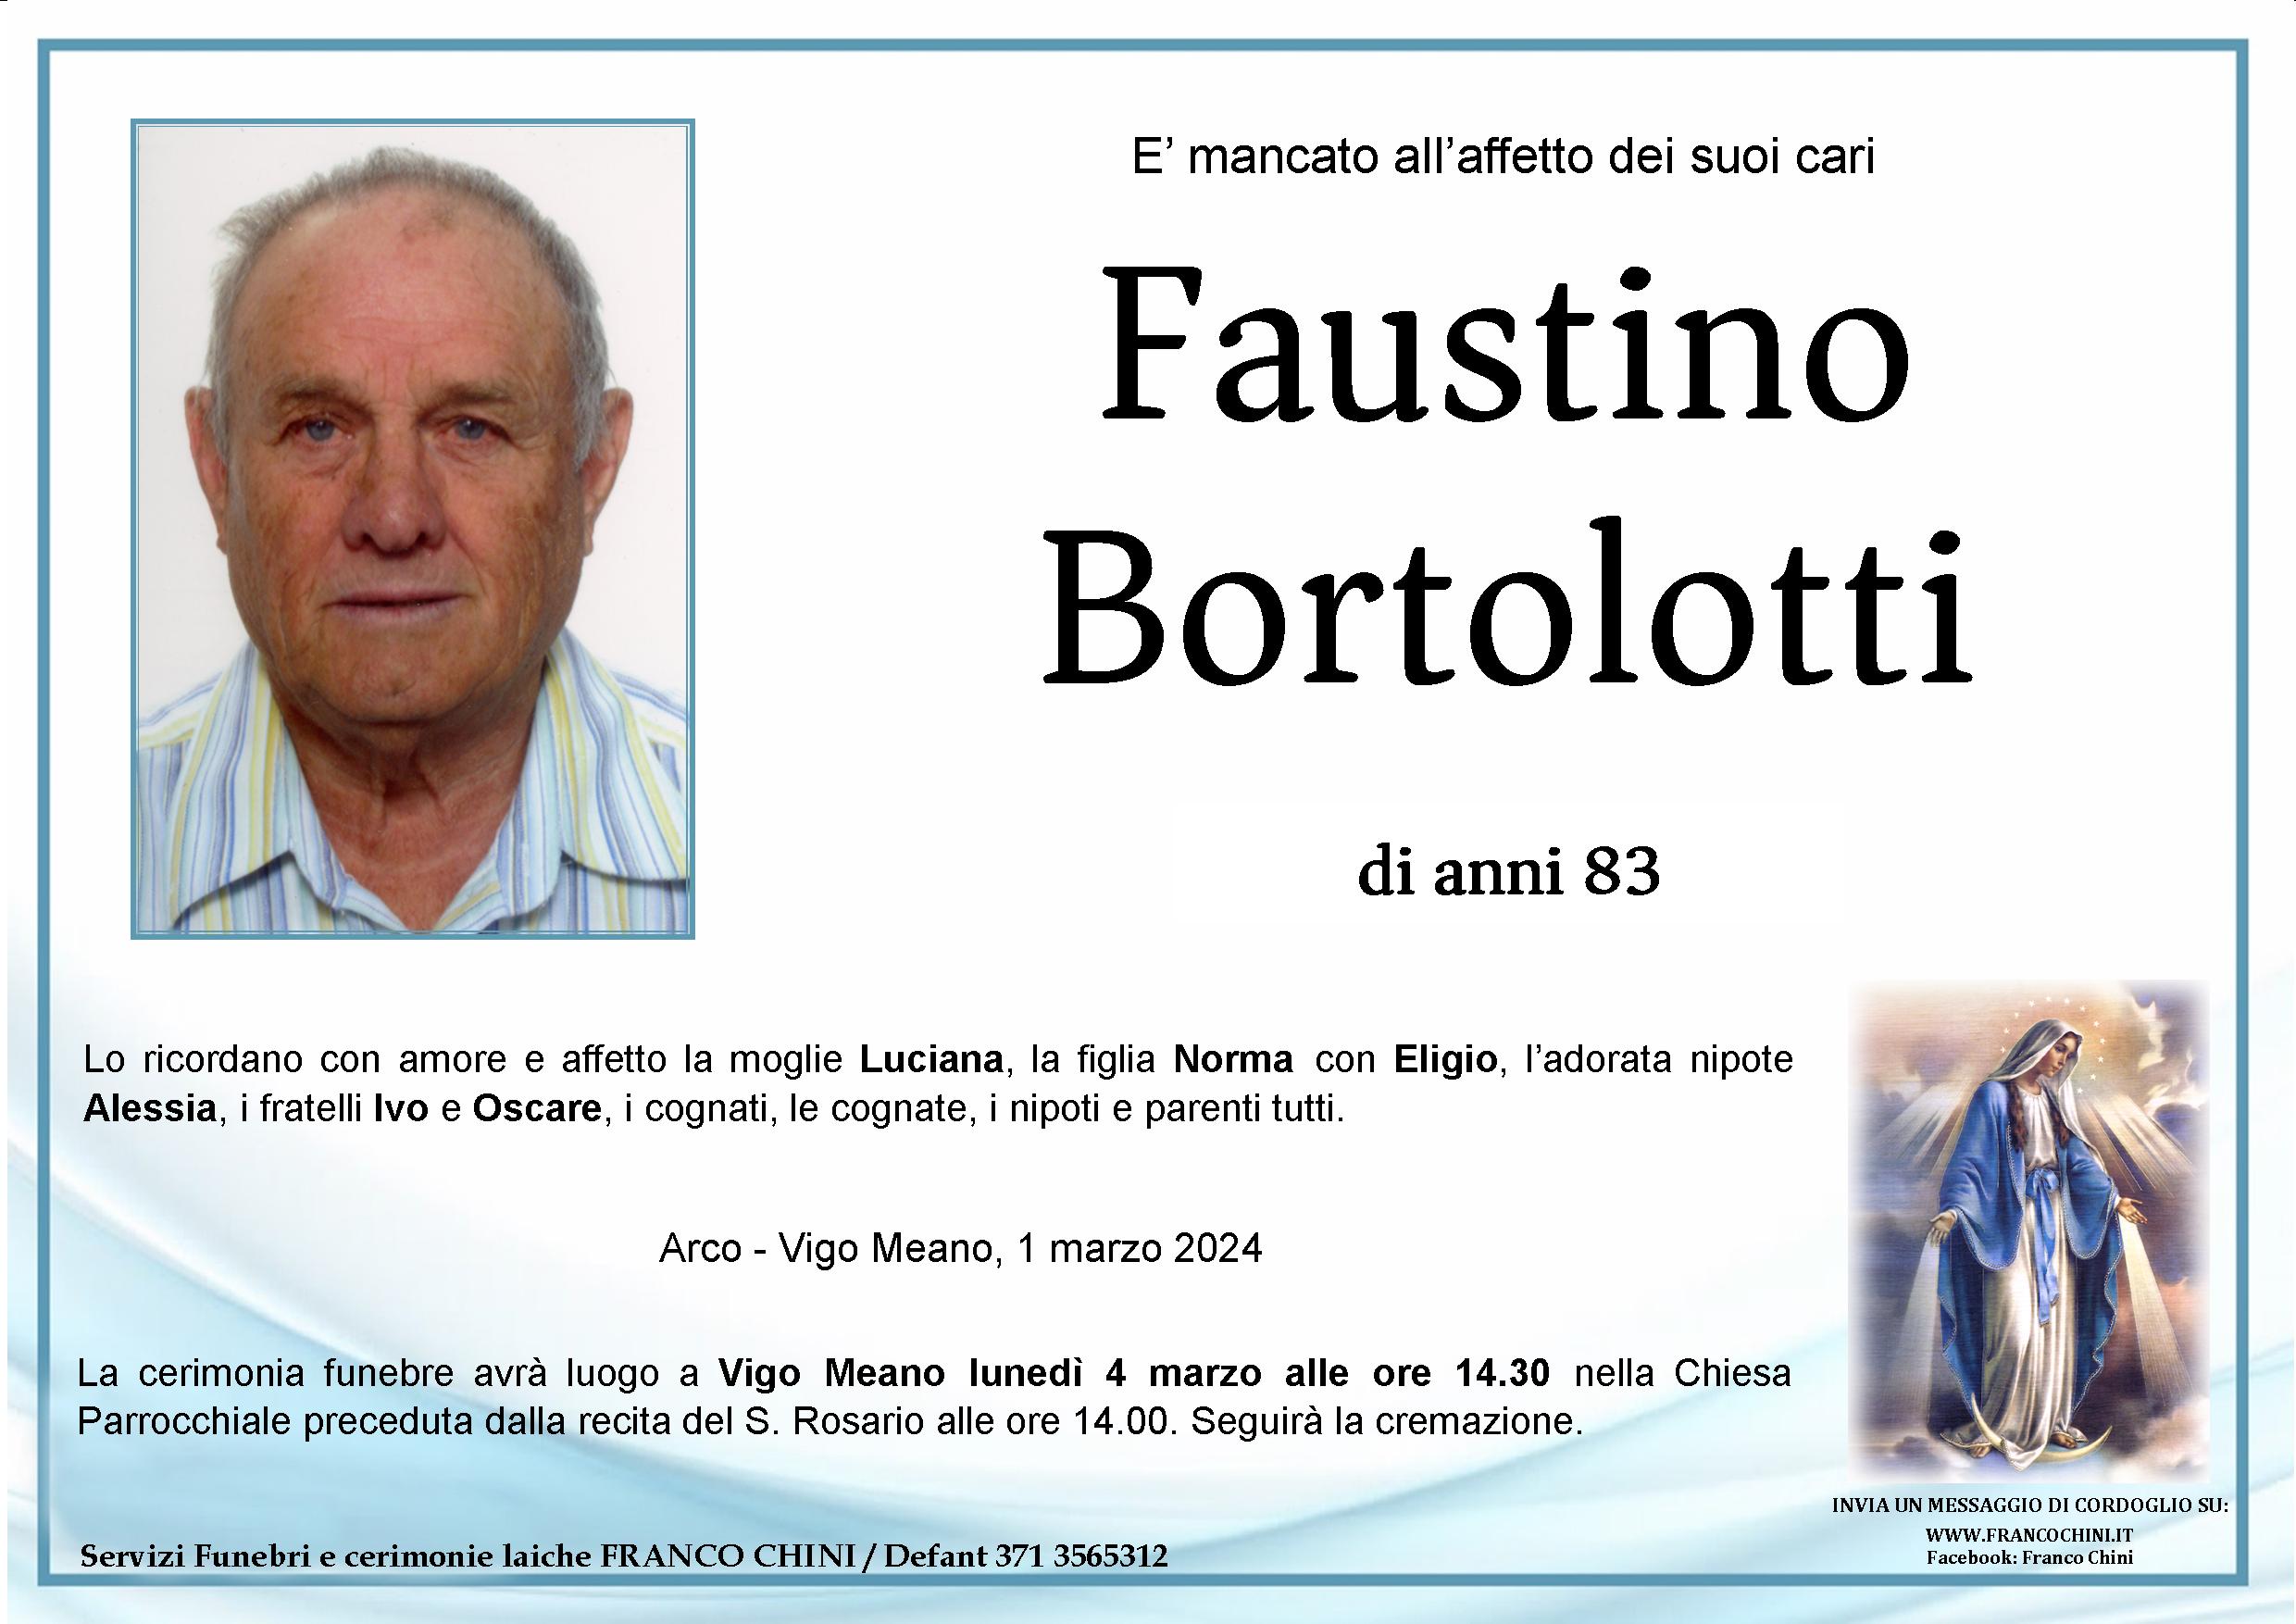 Faustino Bortolotti